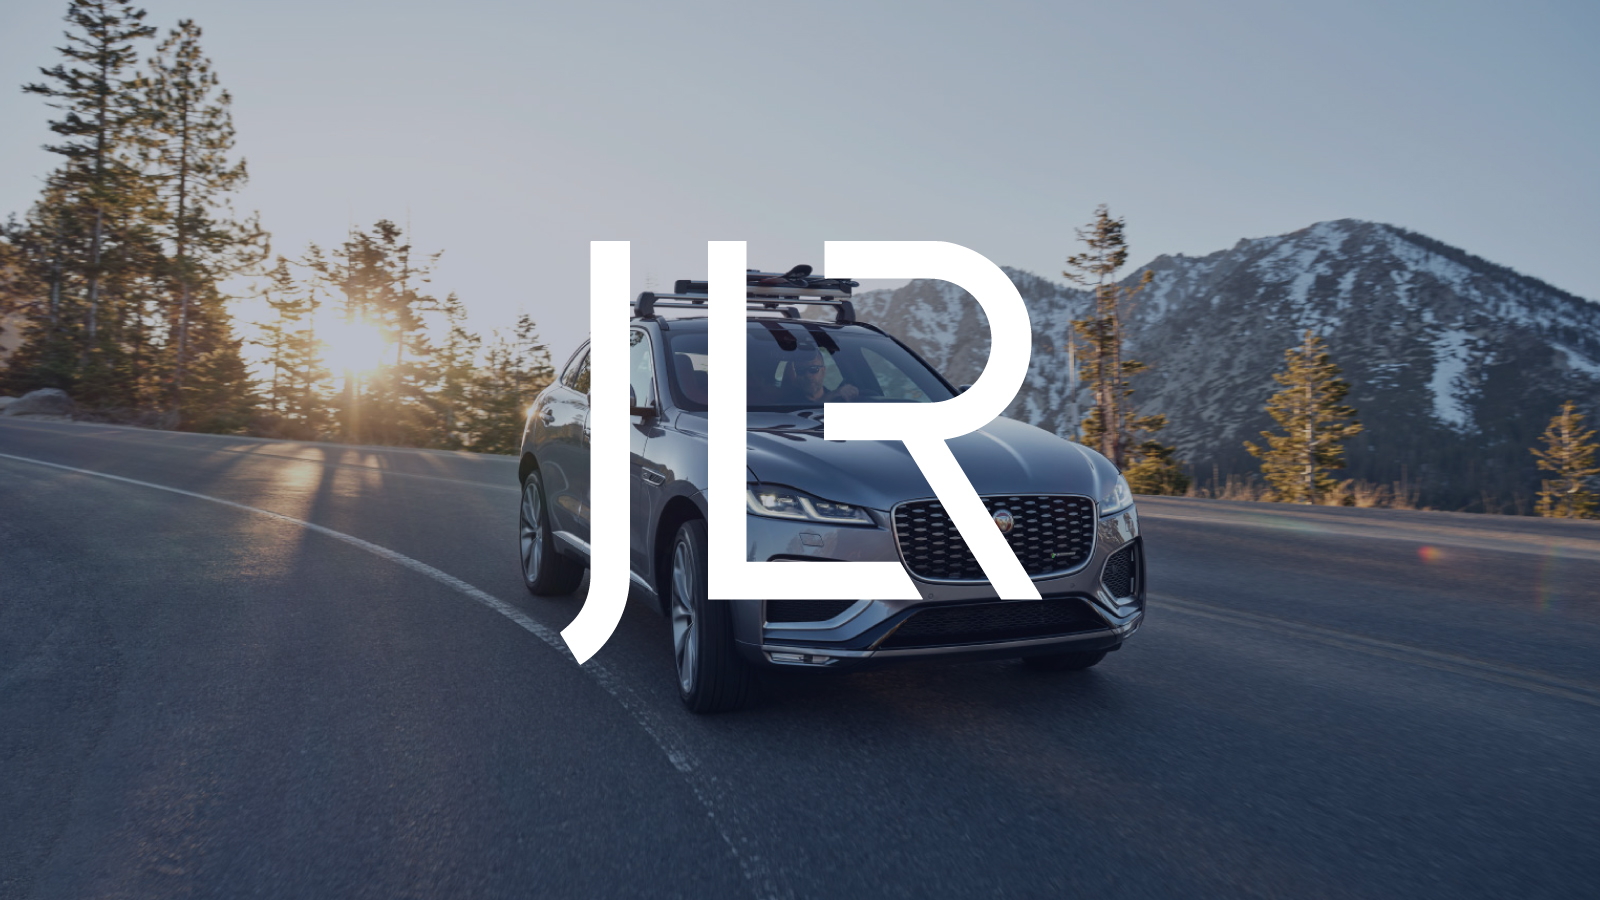 Graphique : Logo JLR au-dessus d’un SUV Jaguar roulant sur une route